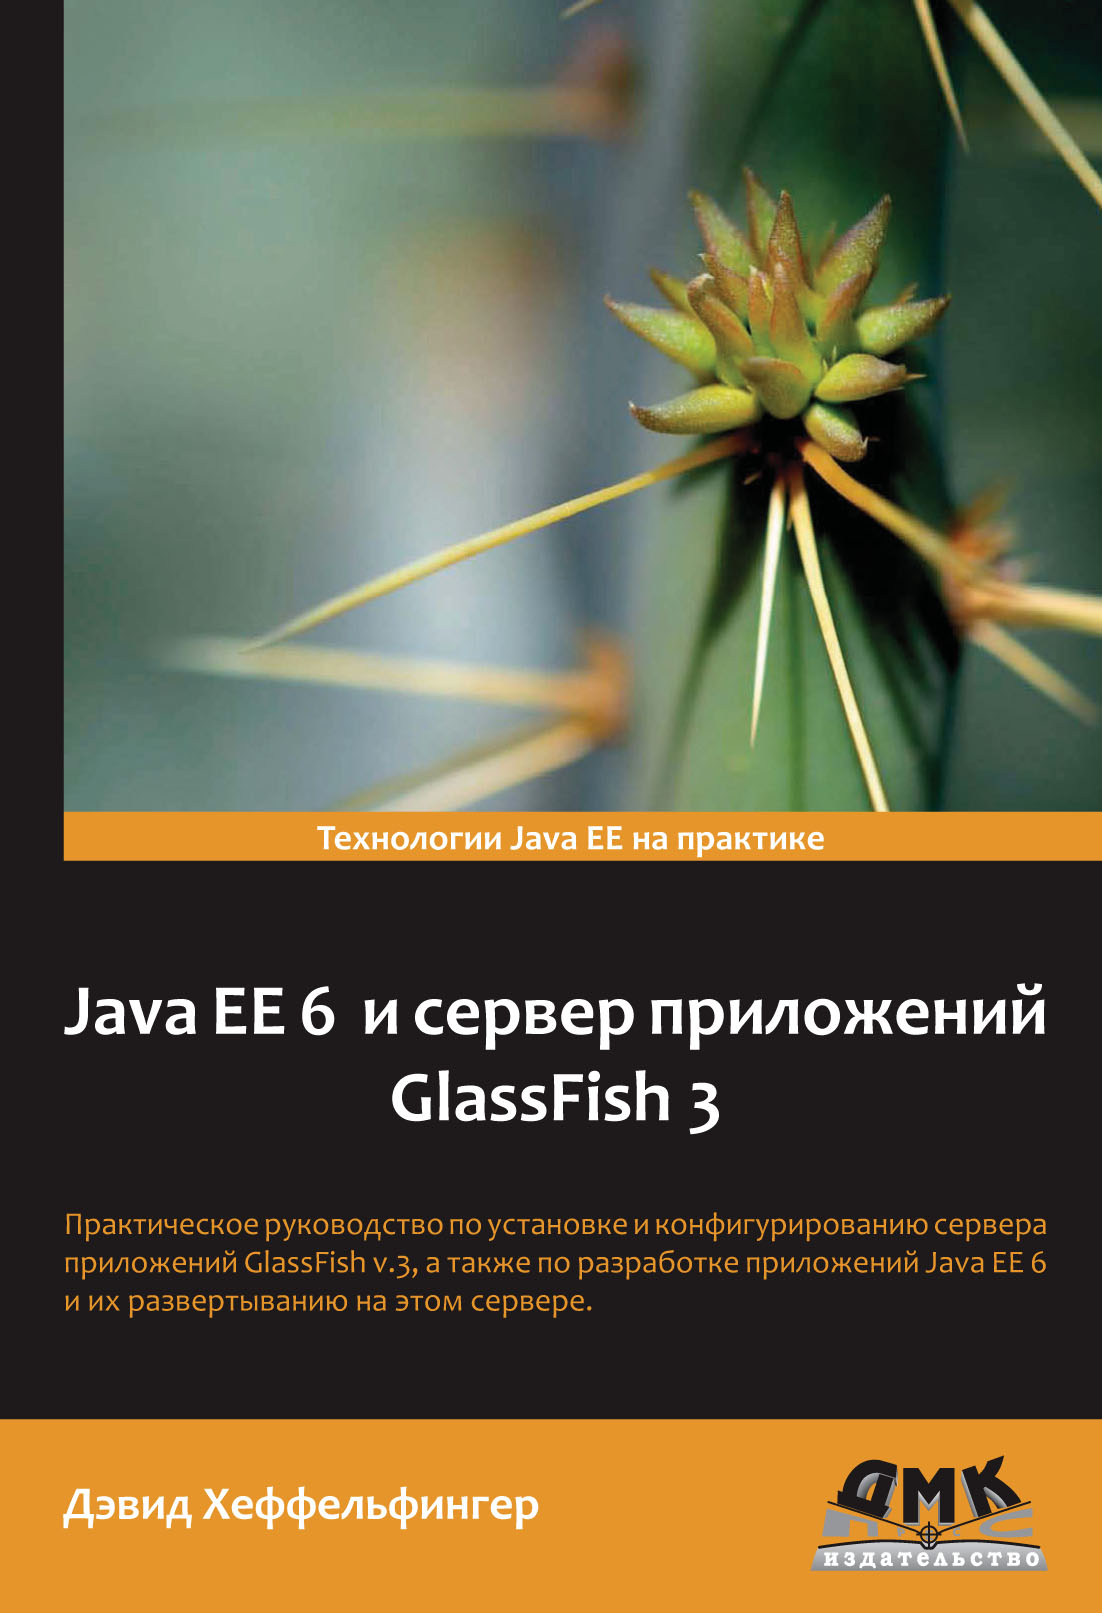 Книга  Java EE 6 и сервер приложений GlassFish 3 созданная Дэвид Хеффельфингер, Е. Н. Карышев может относится к жанру зарубежная компьютерная литература, зарубежная справочная литература, программирование, руководства. Стоимость электронной книги Java EE 6 и сервер приложений GlassFish 3 с идентификатором 6090313 составляет 479.00 руб.